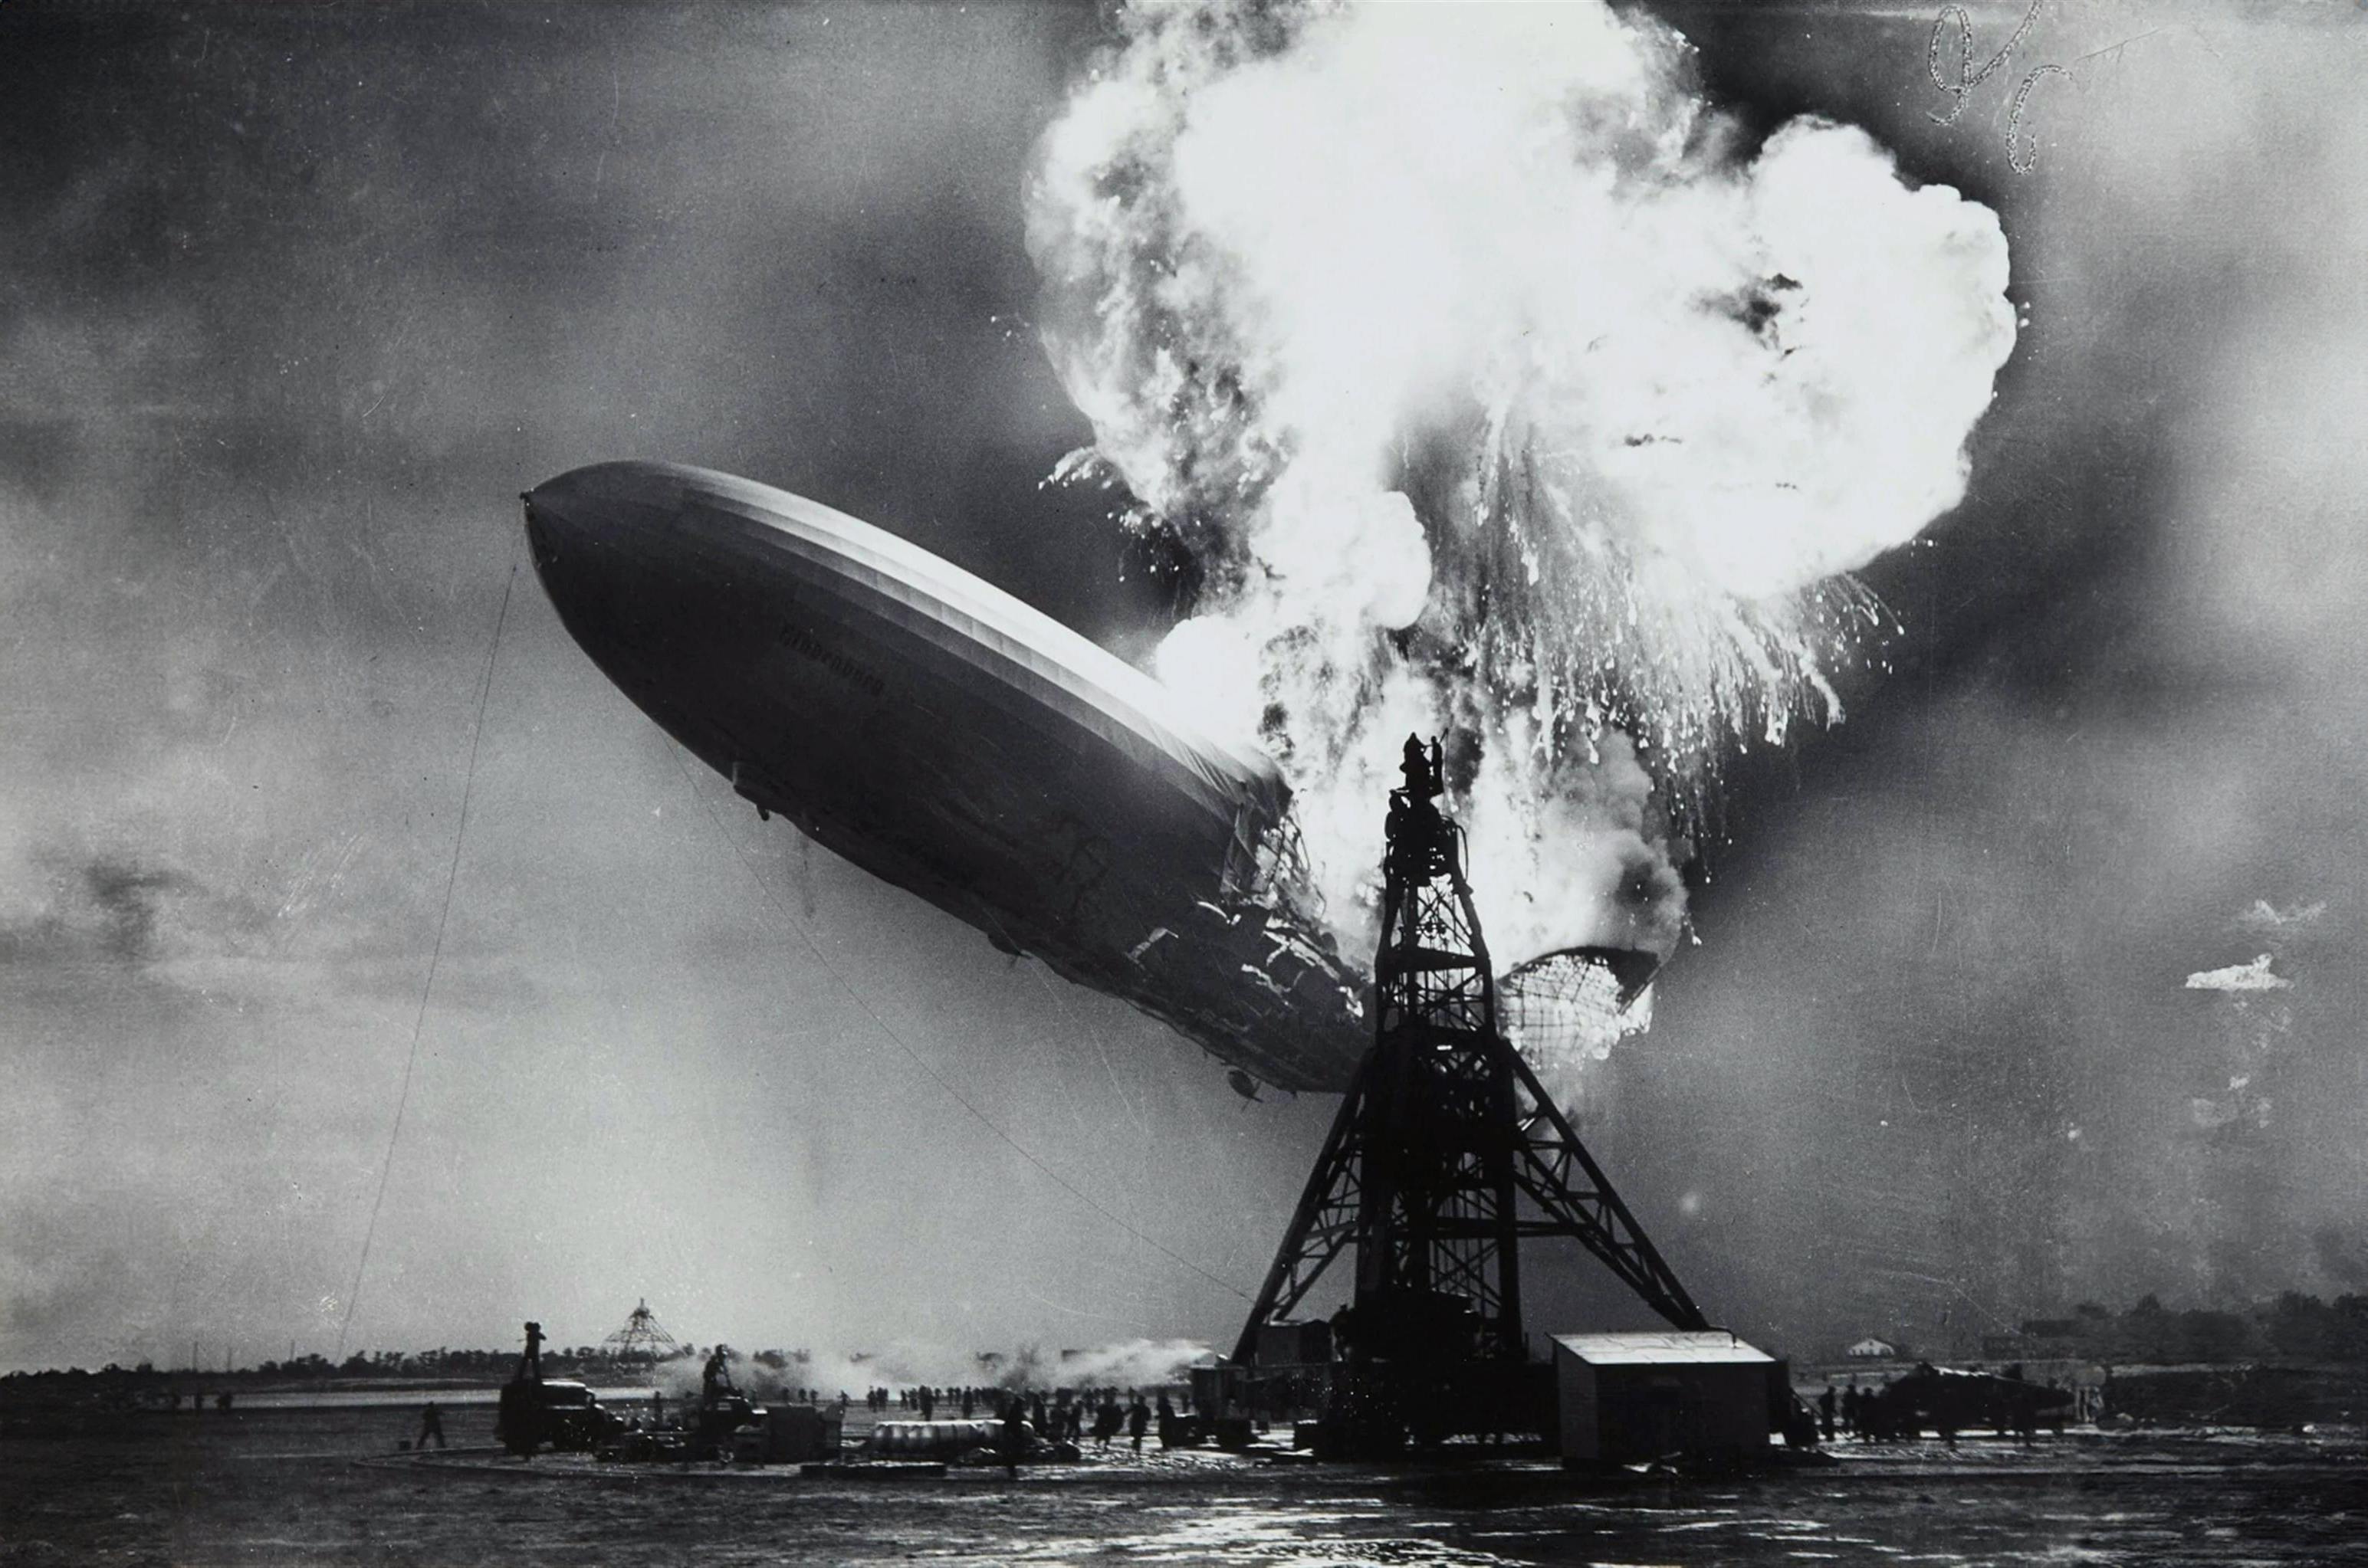 Das Foto verewigt den Moment, als das Luftschiff Hindenburg 1937 in New Jersey sein katastrophales Schicksal erlitt. Sein Absturz wurde weltweit in den Medien verbreitet und markierte das Ende des transatlantischen Luftschiffverkehrs.  - Sam Shere (1905–1982), Public domain, via Wikimedia Commons